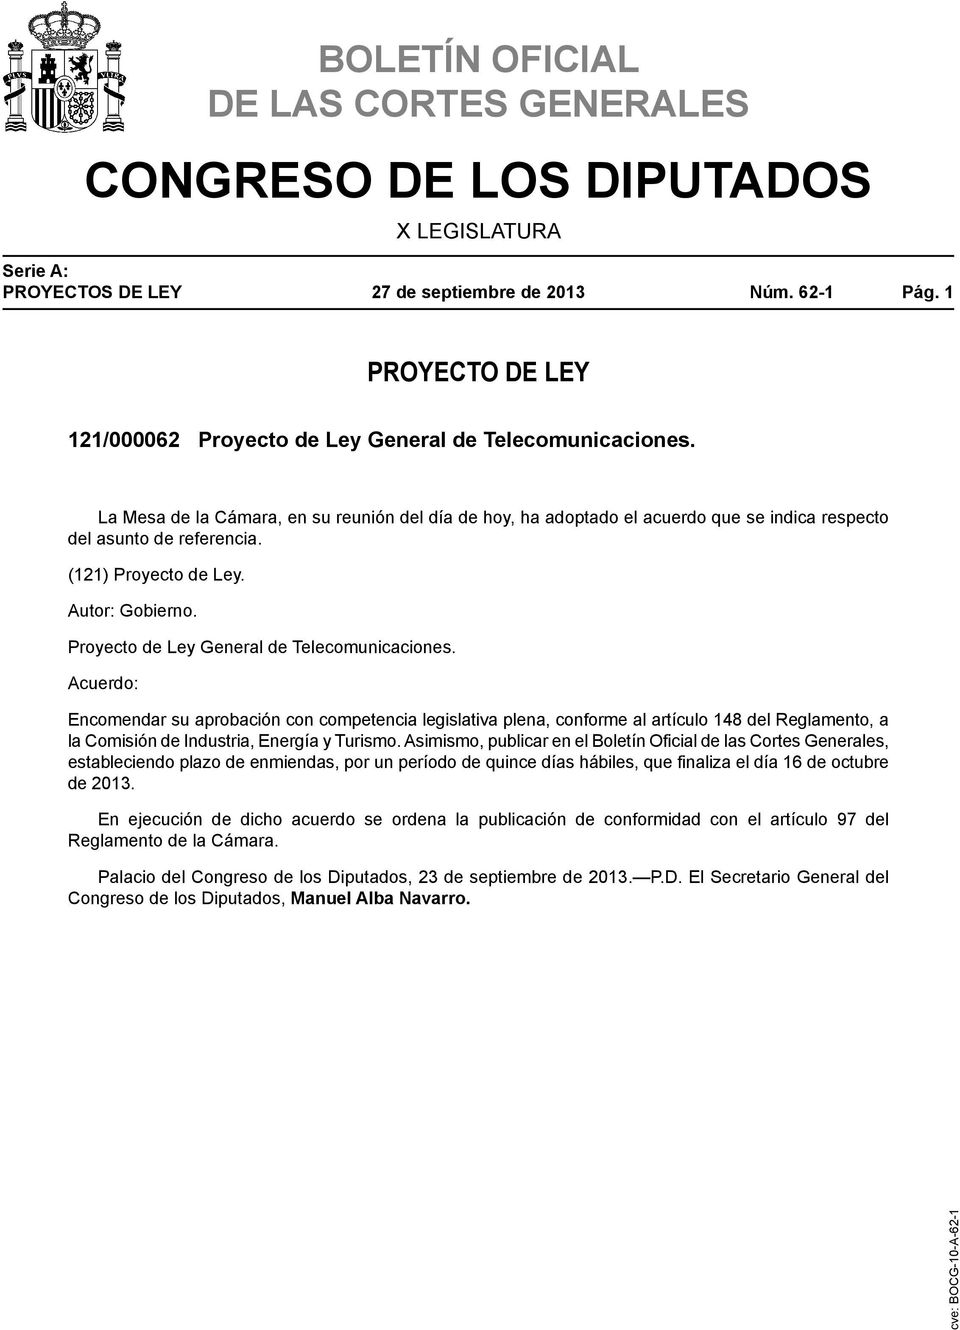 Proyecto de Ley General de Telecomunicaciones.